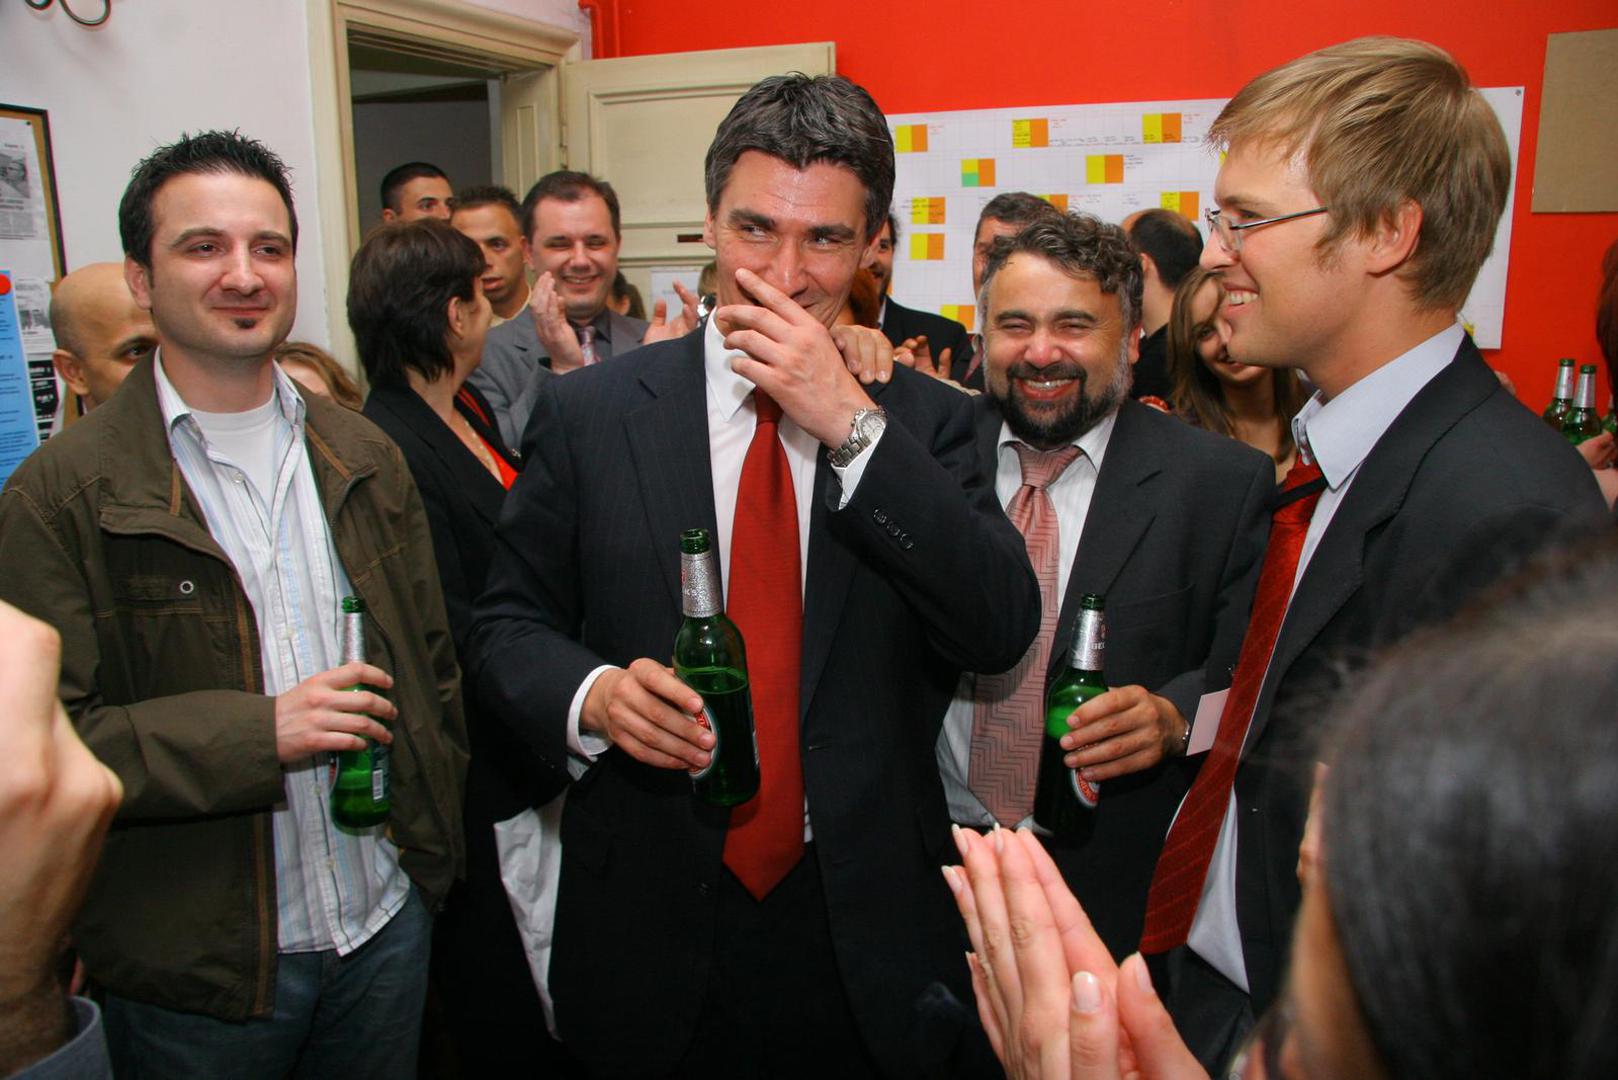 Parlamentarne izbore 2007. u kojima je Ljubo Jurčić bio premijerski kandidat, SDP je izgubio pa je iduće četiri godine Milanović bio saborski zastupnik